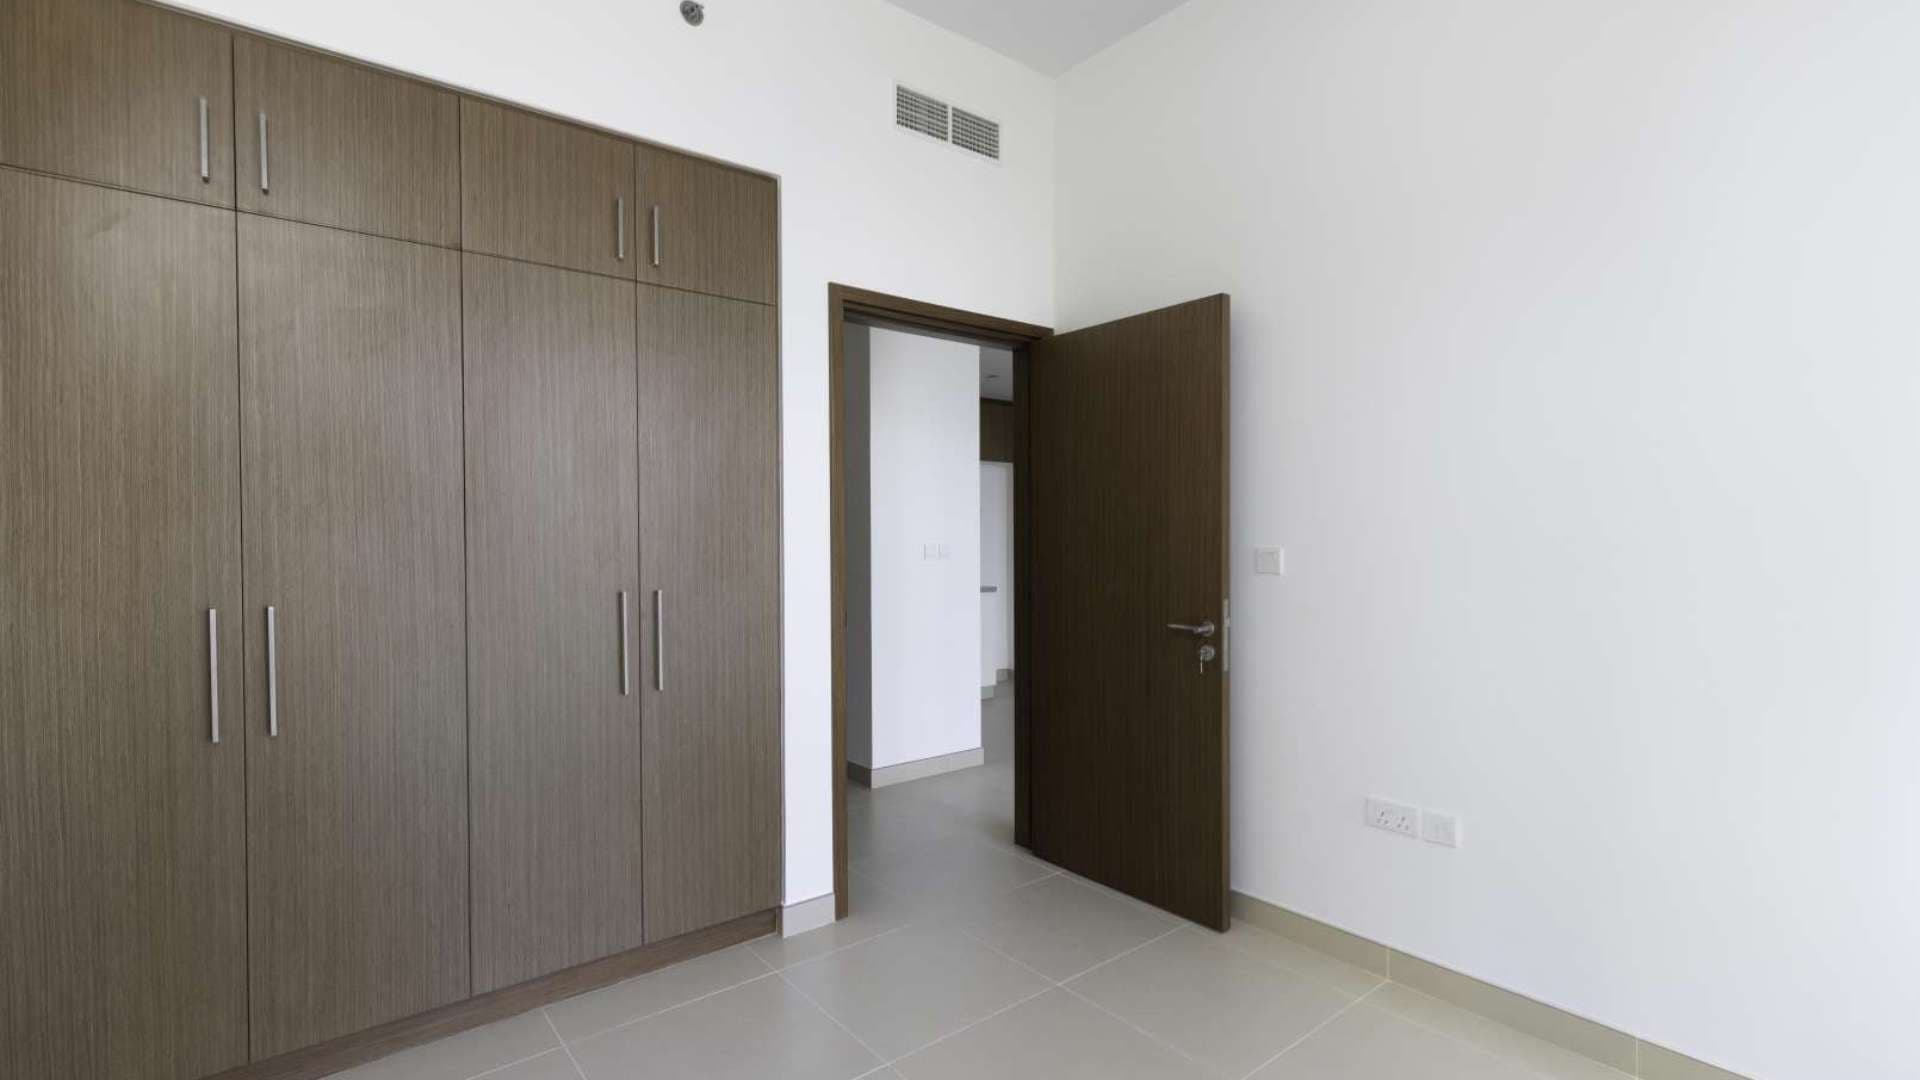 2 Bedroom Apartment For Rent 5242 Lp10767 11a86502a08cc300.jpg